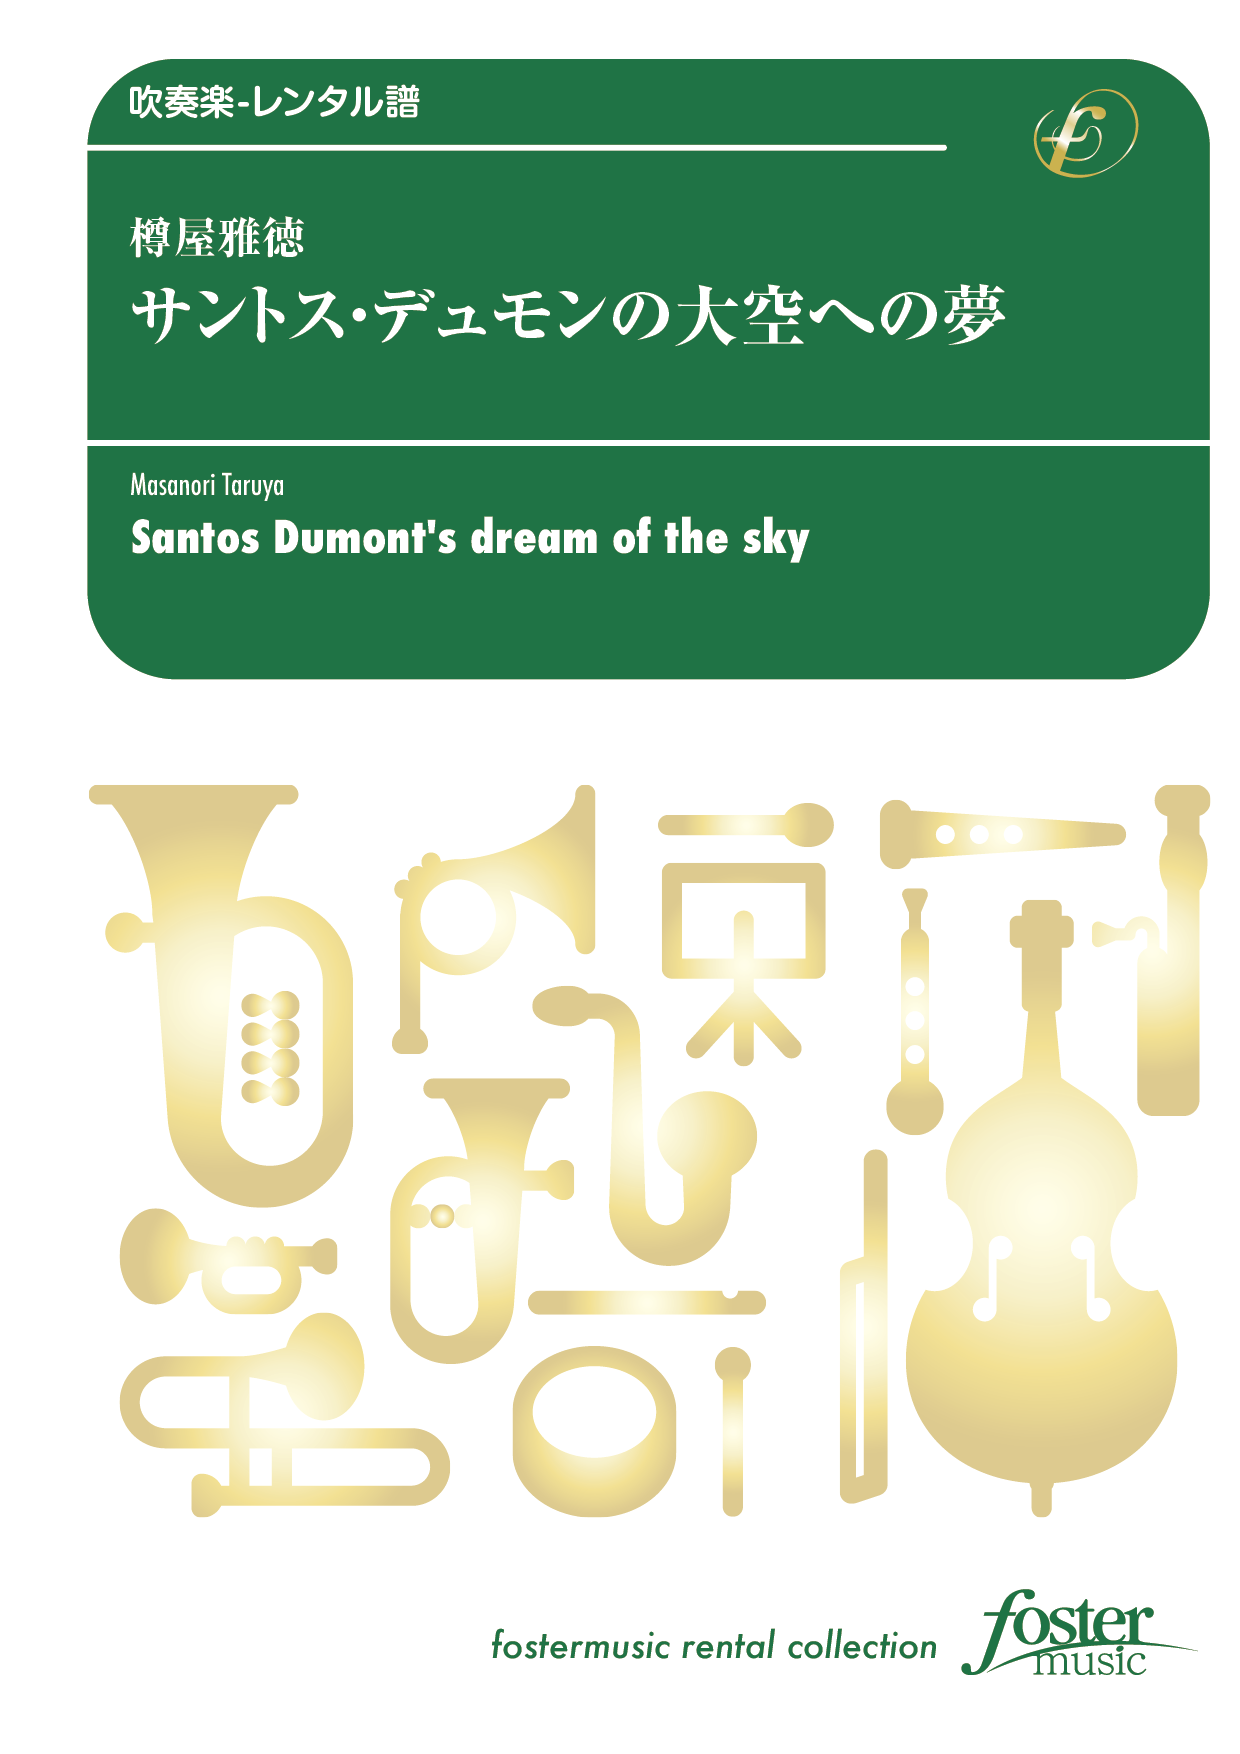 サントス・デュモンの大空への夢：樽屋雅徳 [吹奏楽中編成-レンタル譜]